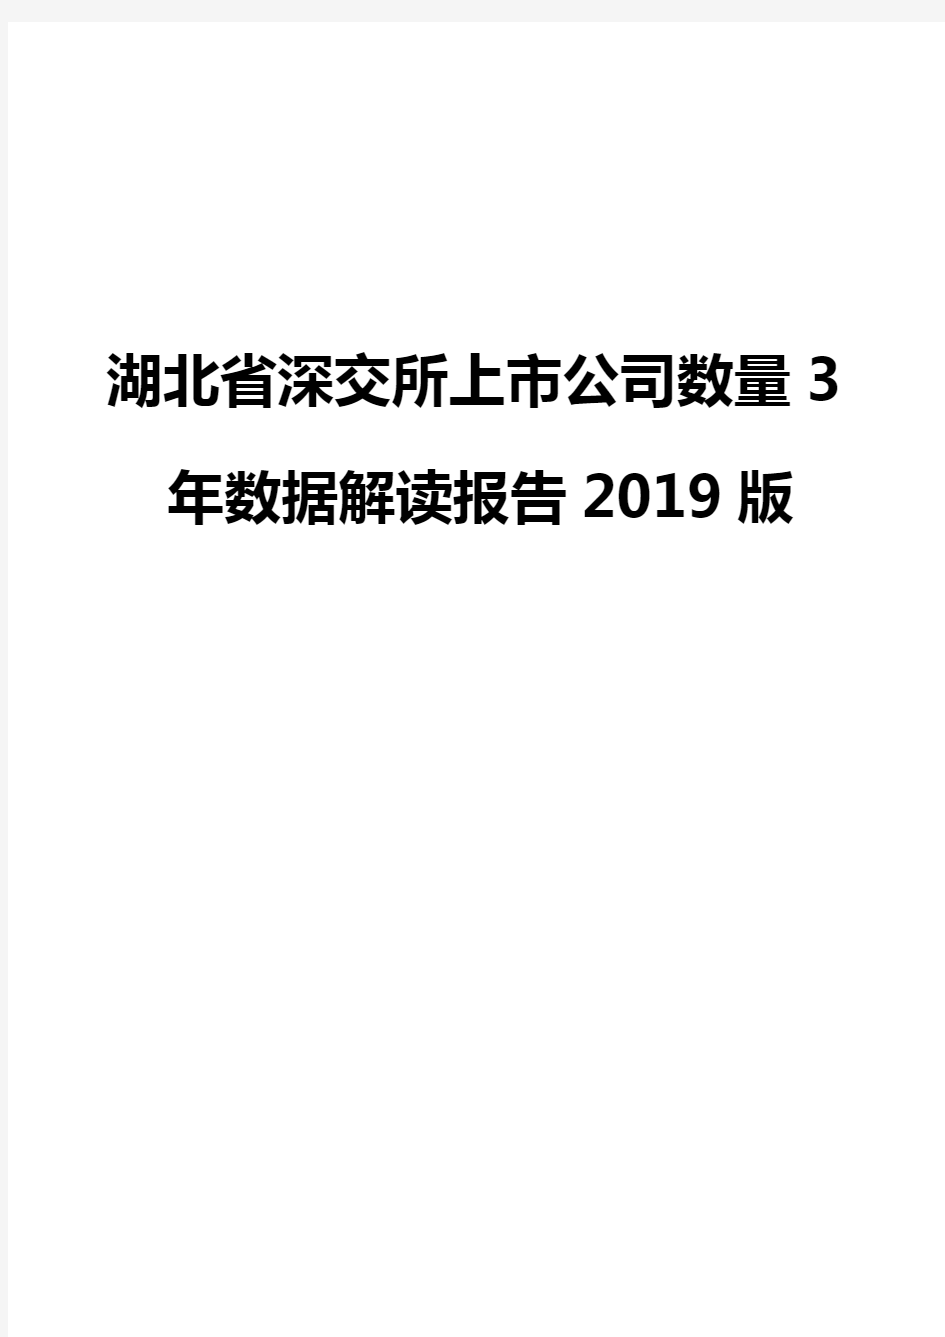 湖北省深交所上市公司数量3年数据解读报告2019版